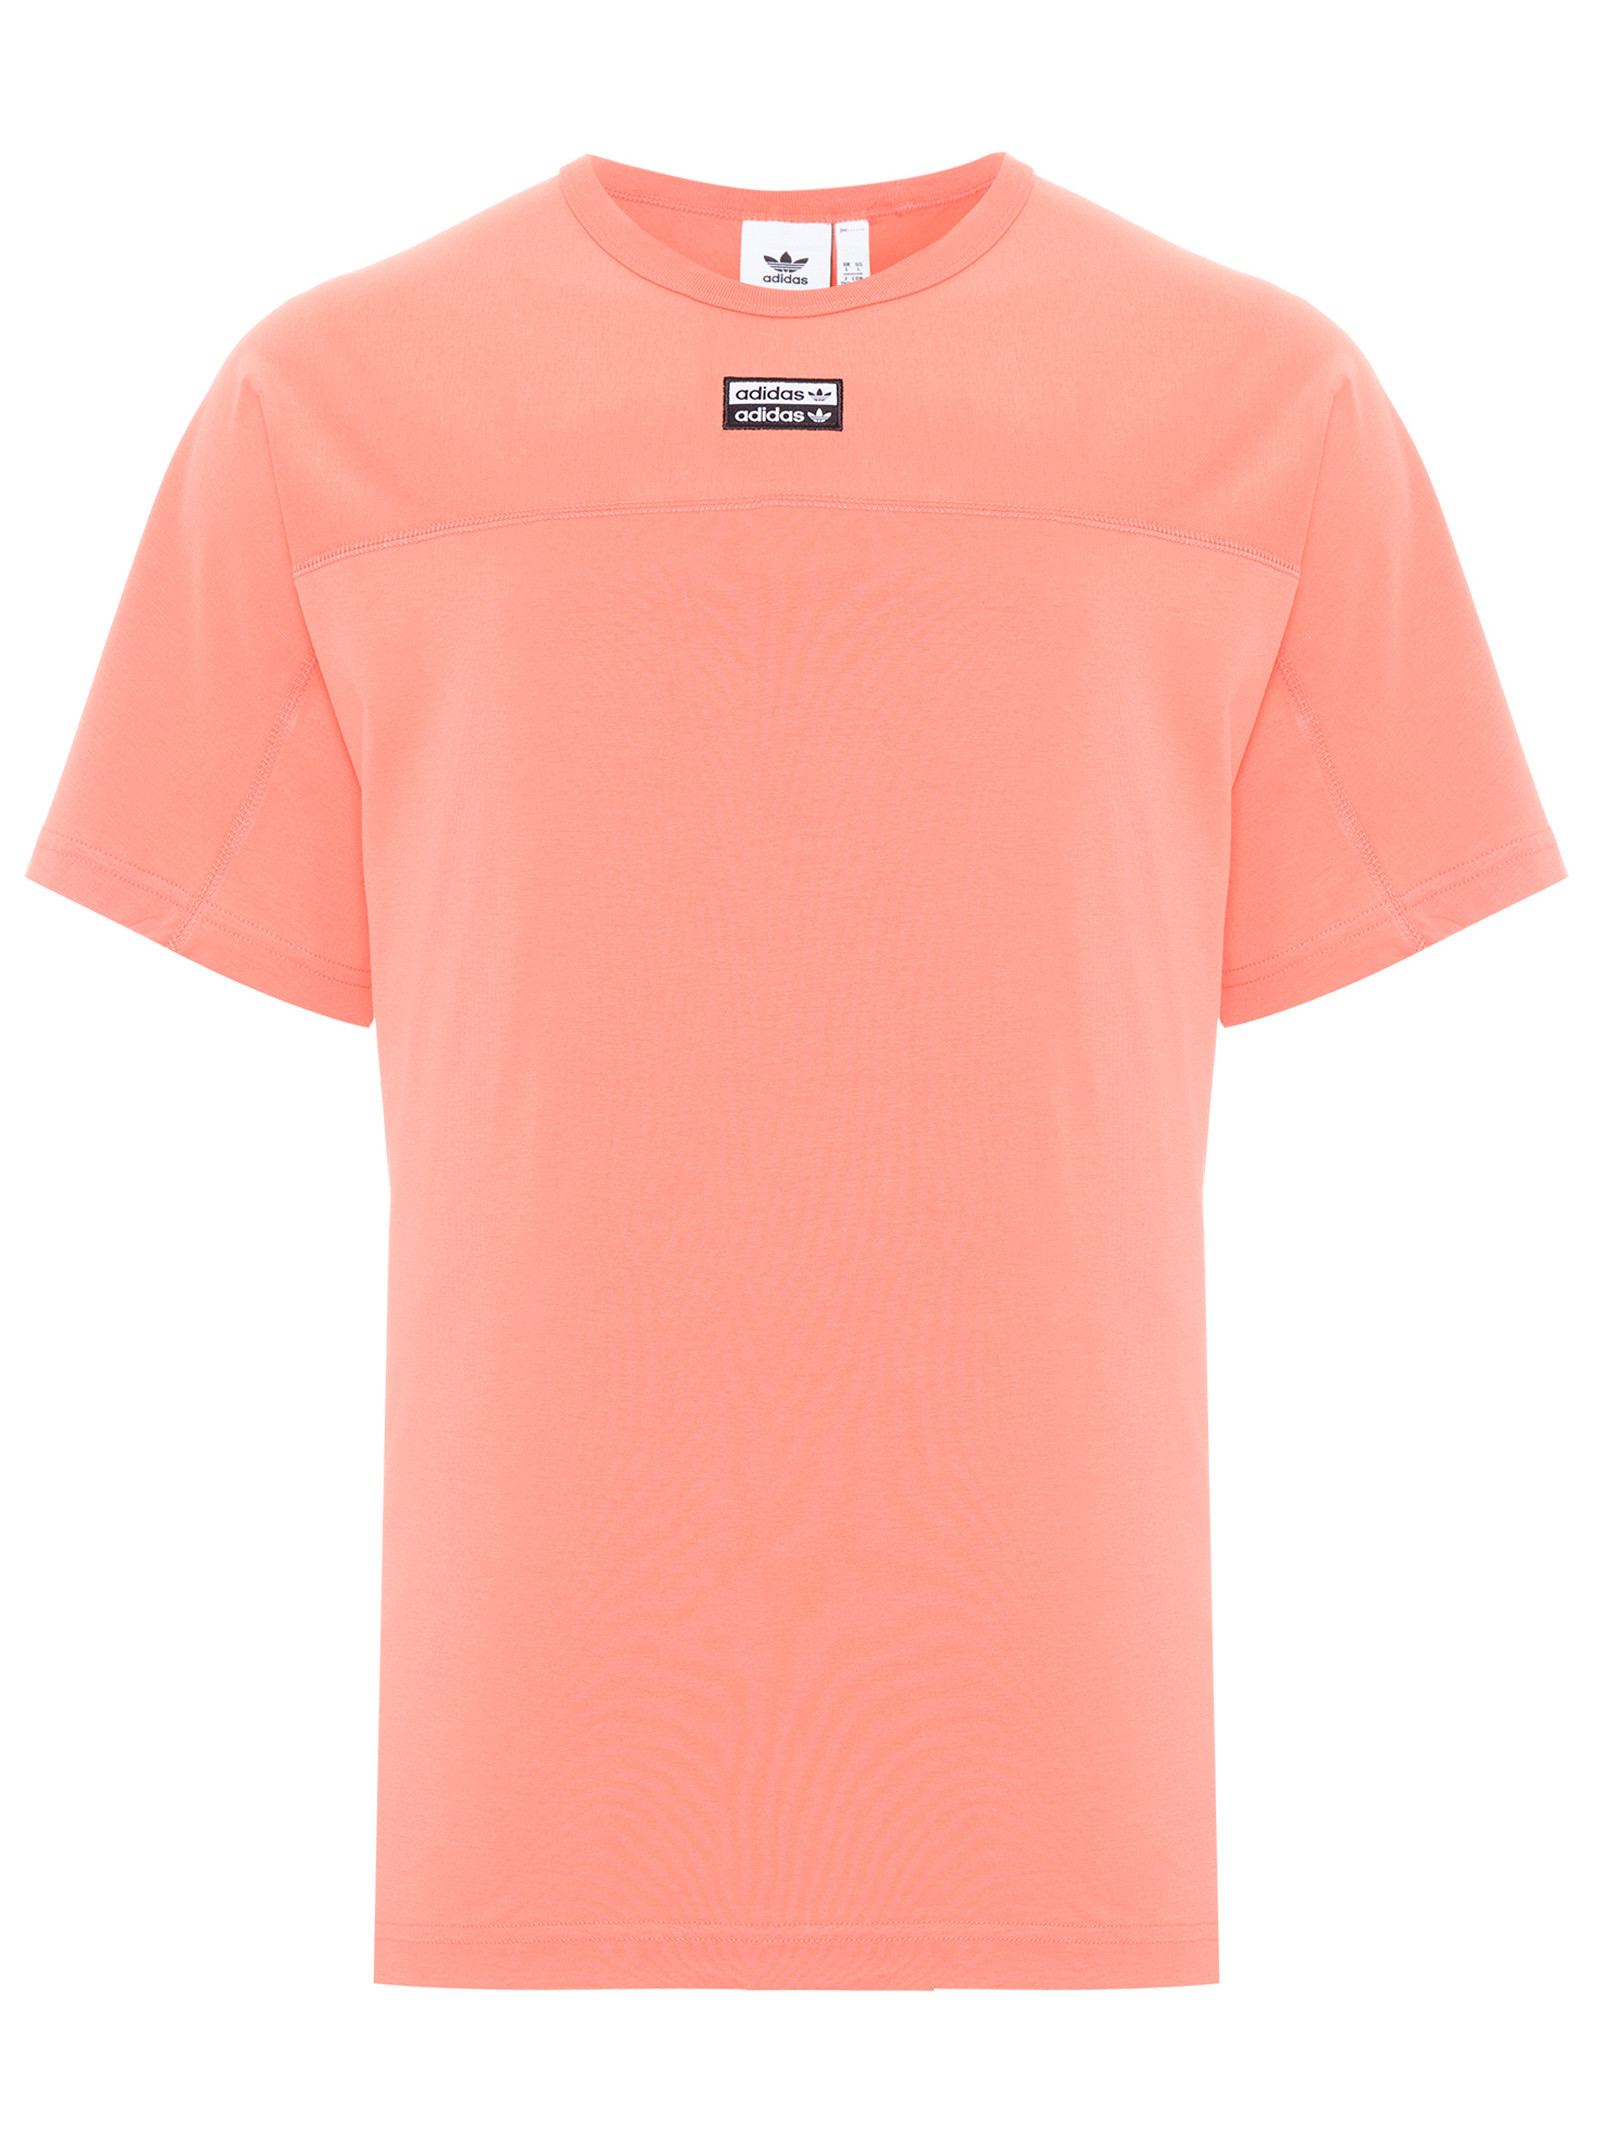 Camiseta Masculina Adidas Originals - Laranja Shop2gether